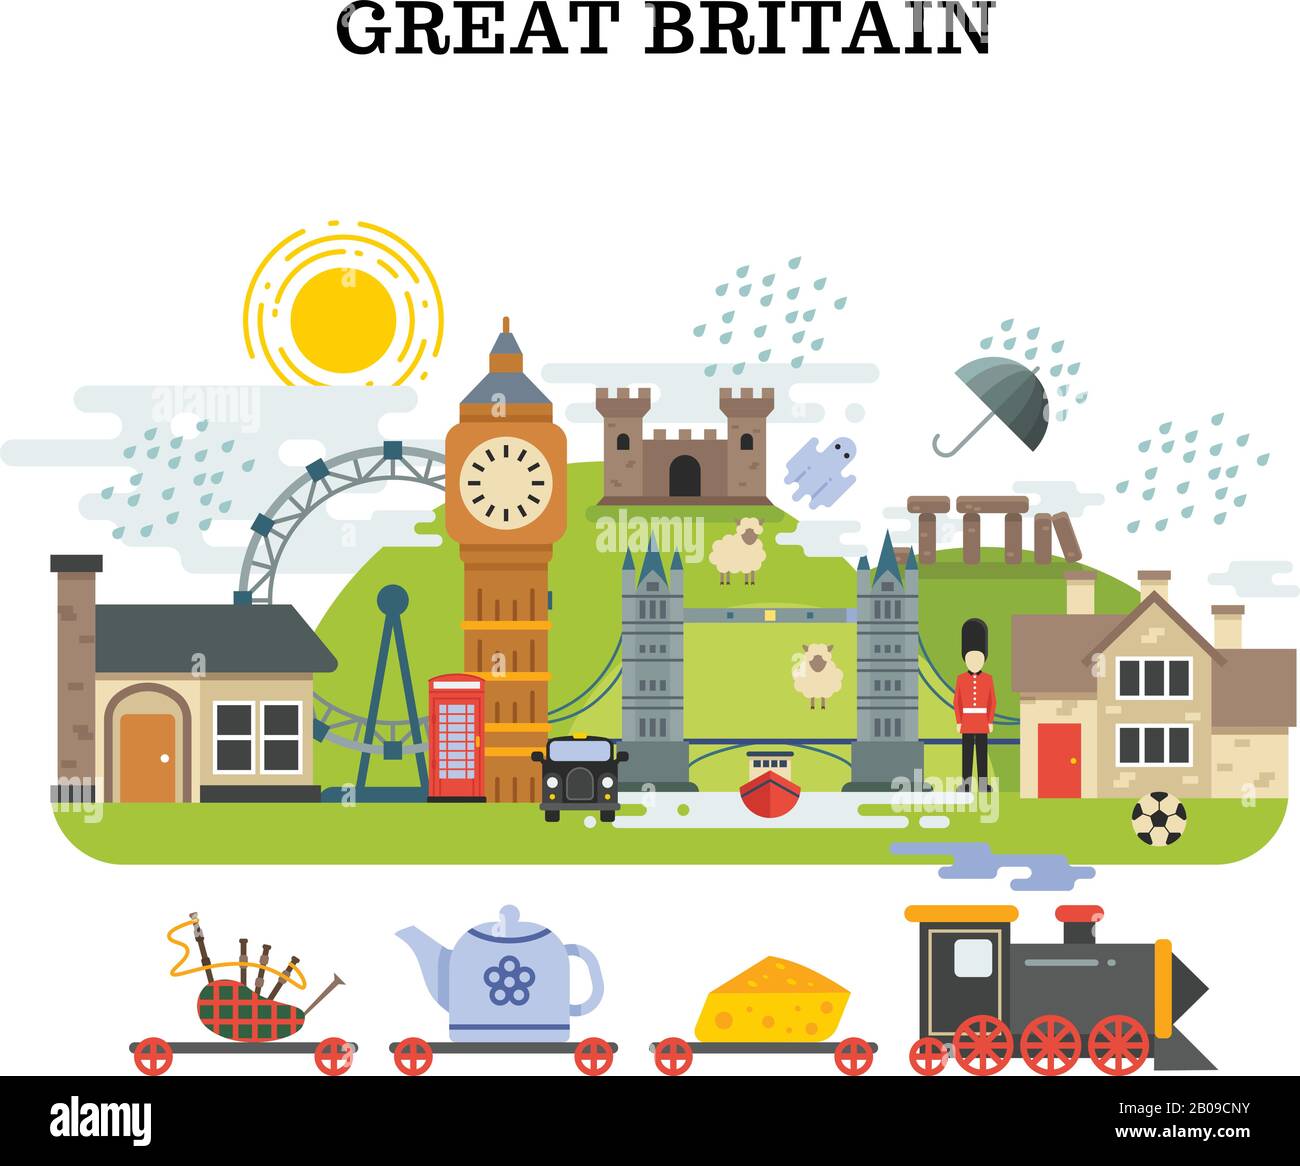 Großbritannien und london Vector Travelling Concept. Bannertourismus in england, Plakat mit dem Wahrzeichen von london und england Illustration Stock Vektor